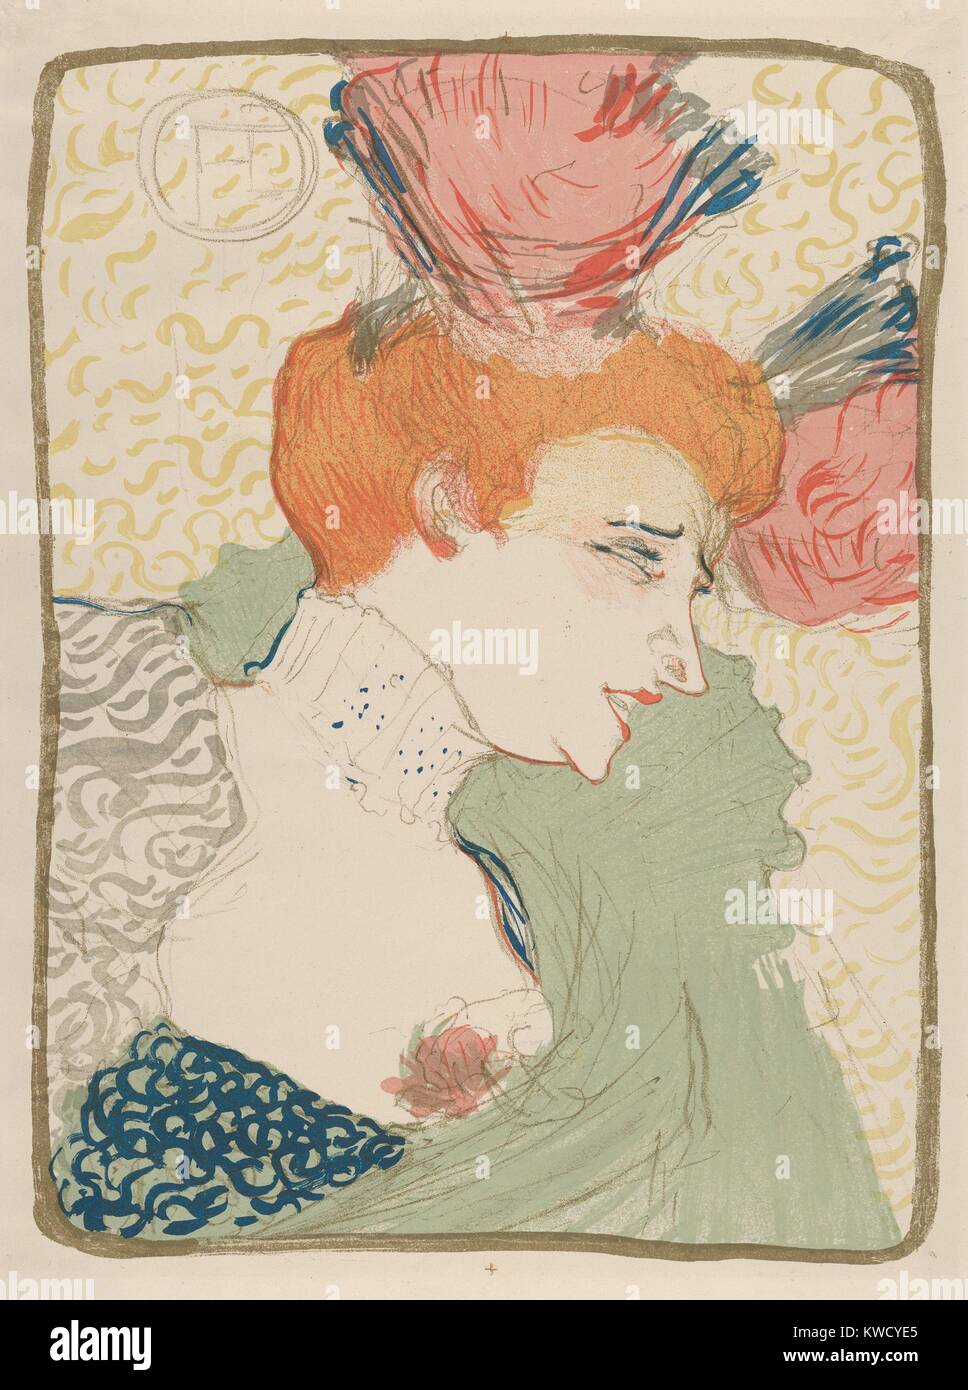 Mademoiselle Marcelle mutuante, Henri de Toulouse-Lautrec, 1895, francese Post-Impressionist stampa. Il cantante francese e ballerino era uno dei preferiti di artista che ha presentato il suo in 12 litografie (BSLOC_2017_5_70) Foto Stock